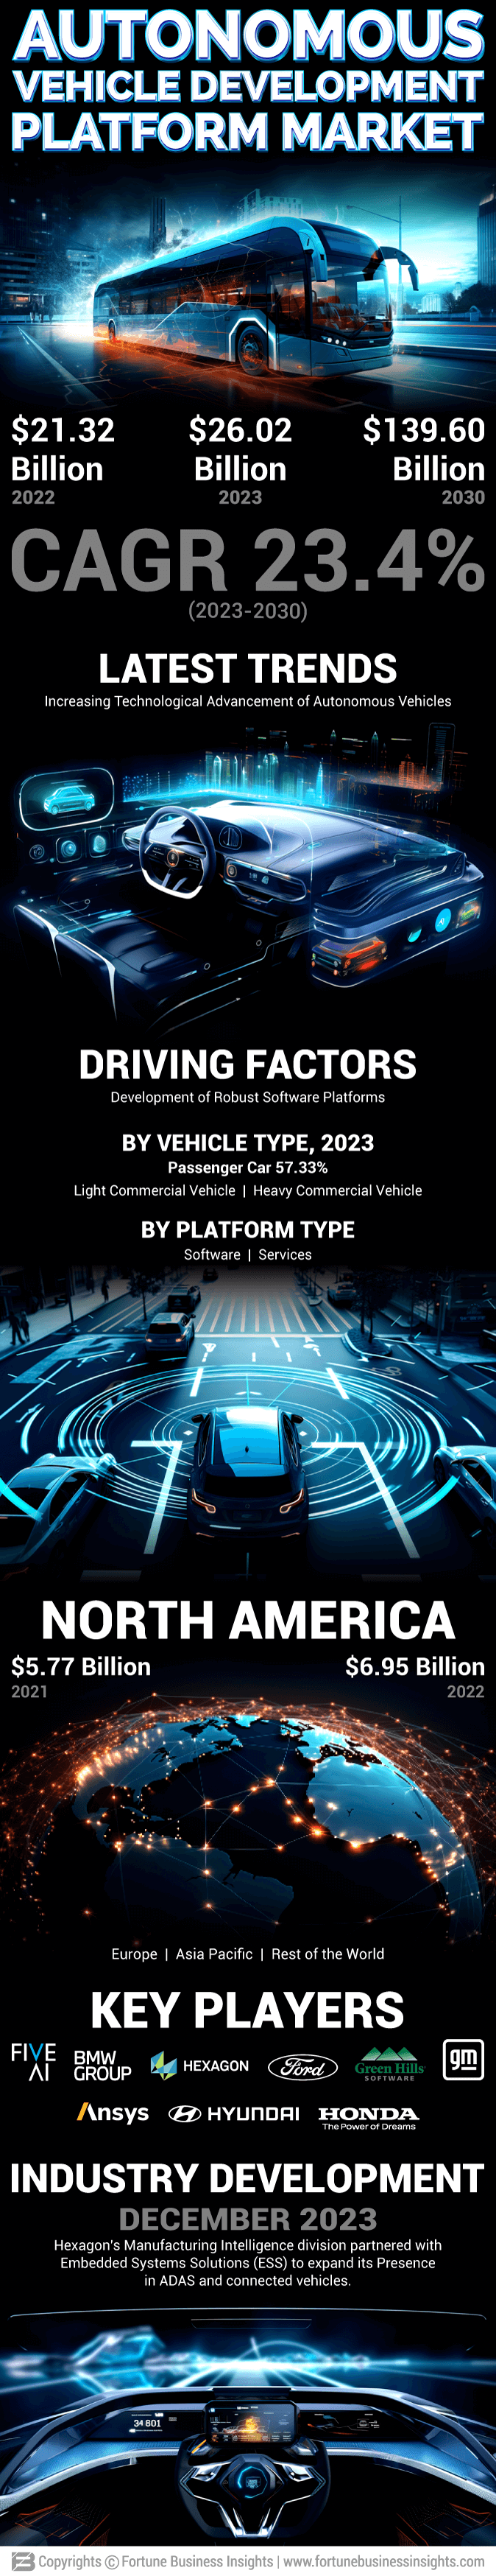 Autonomous Vehicle Development Platform Market